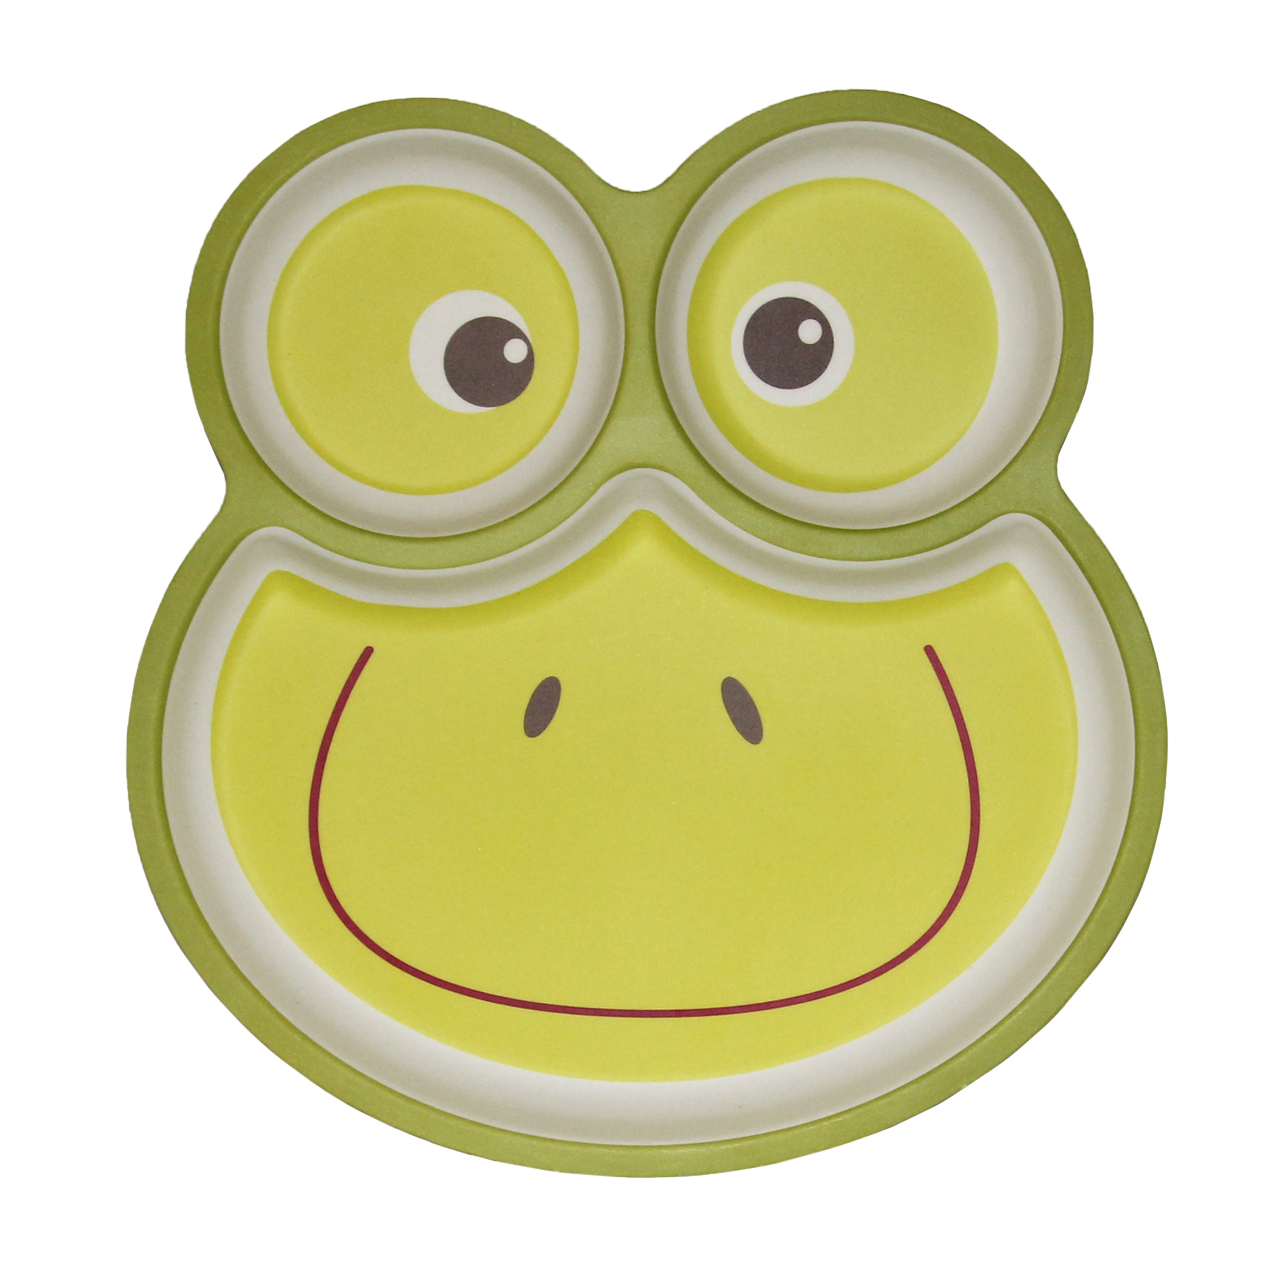 ظرف غذای کودک بامبو فایبر طرح Happy frog